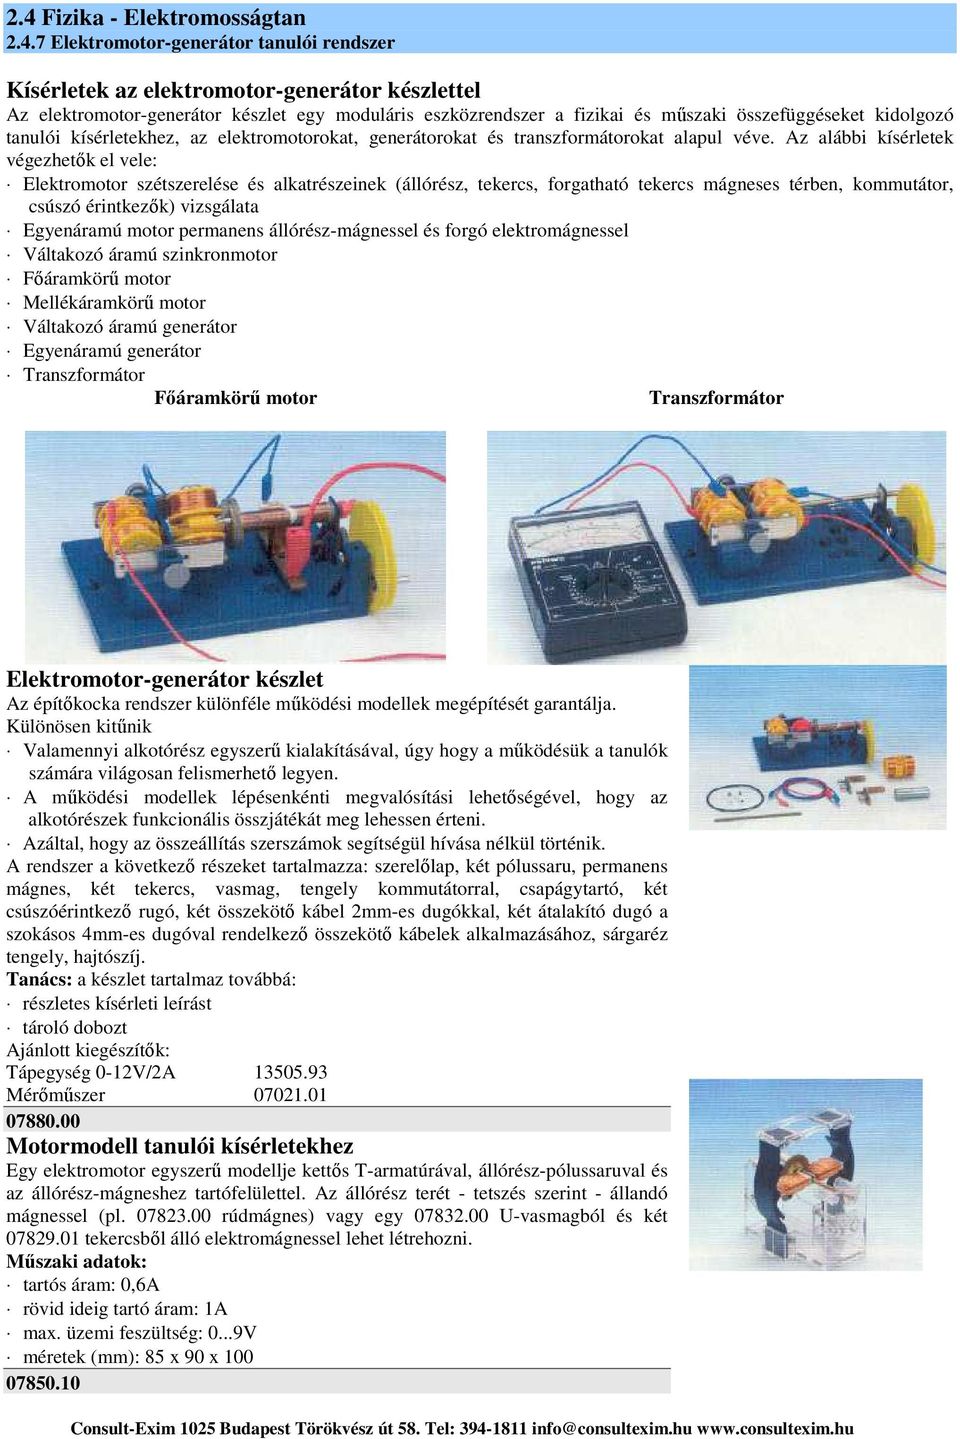 2.4 Fizika - Elektromosságtan Elektromotor-generátor tanulói rendszer - PDF  Ingyenes letöltés